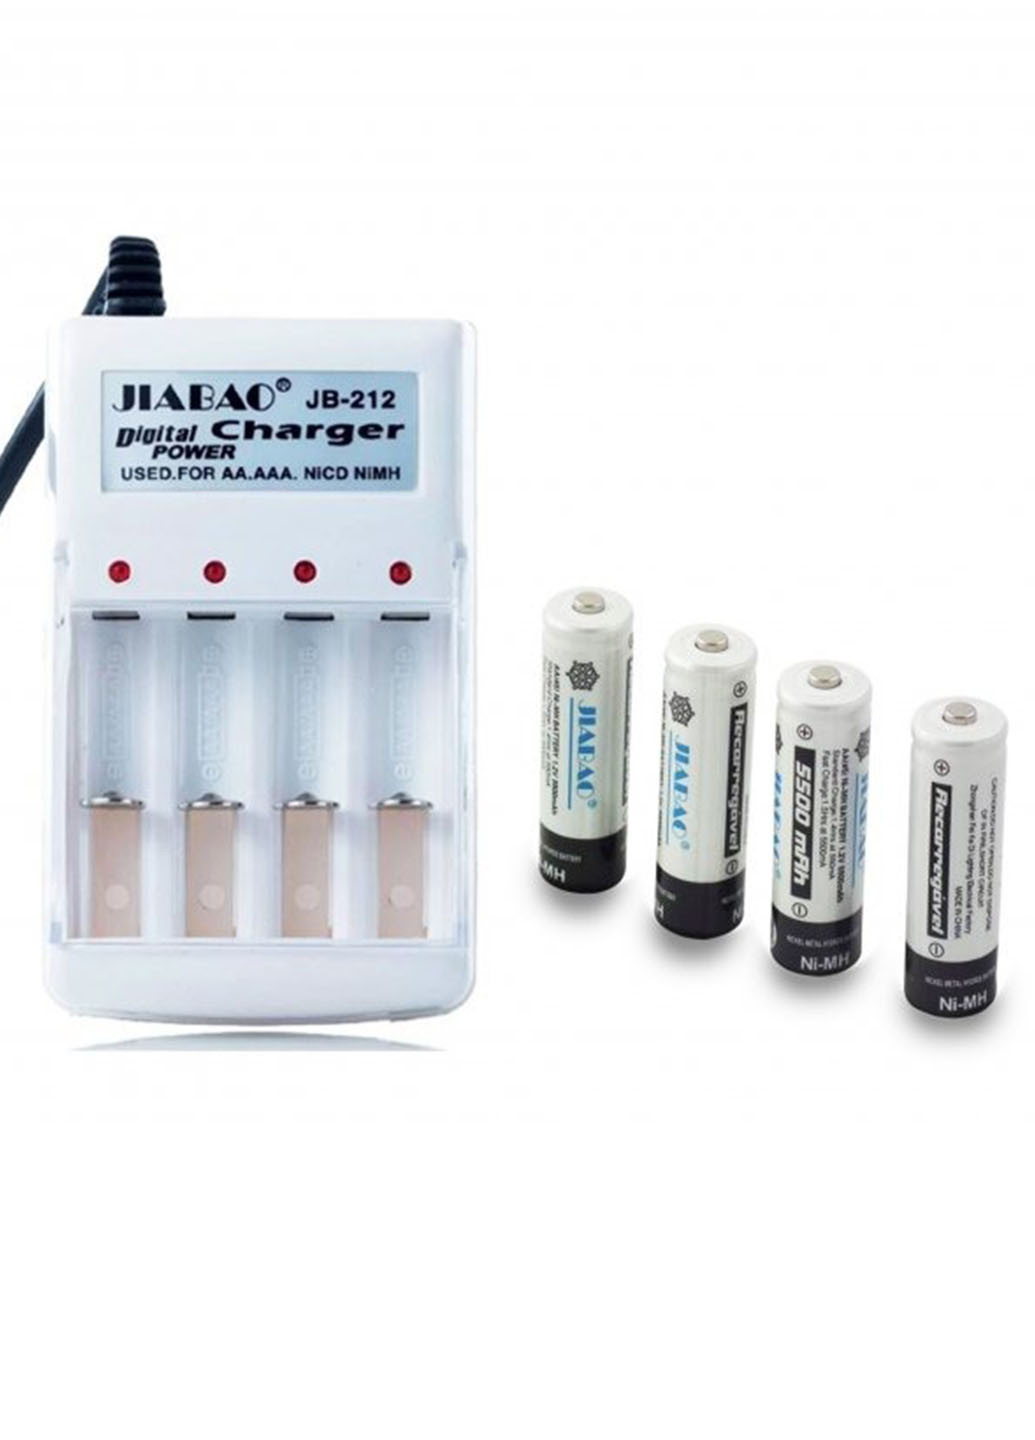 Универсальное зарядное устройство JIABAO для аккумуляторных батареек AAA/AA в комплекте 4 батарейки микропальчик 212AAA Idea jb-212 (272795984)